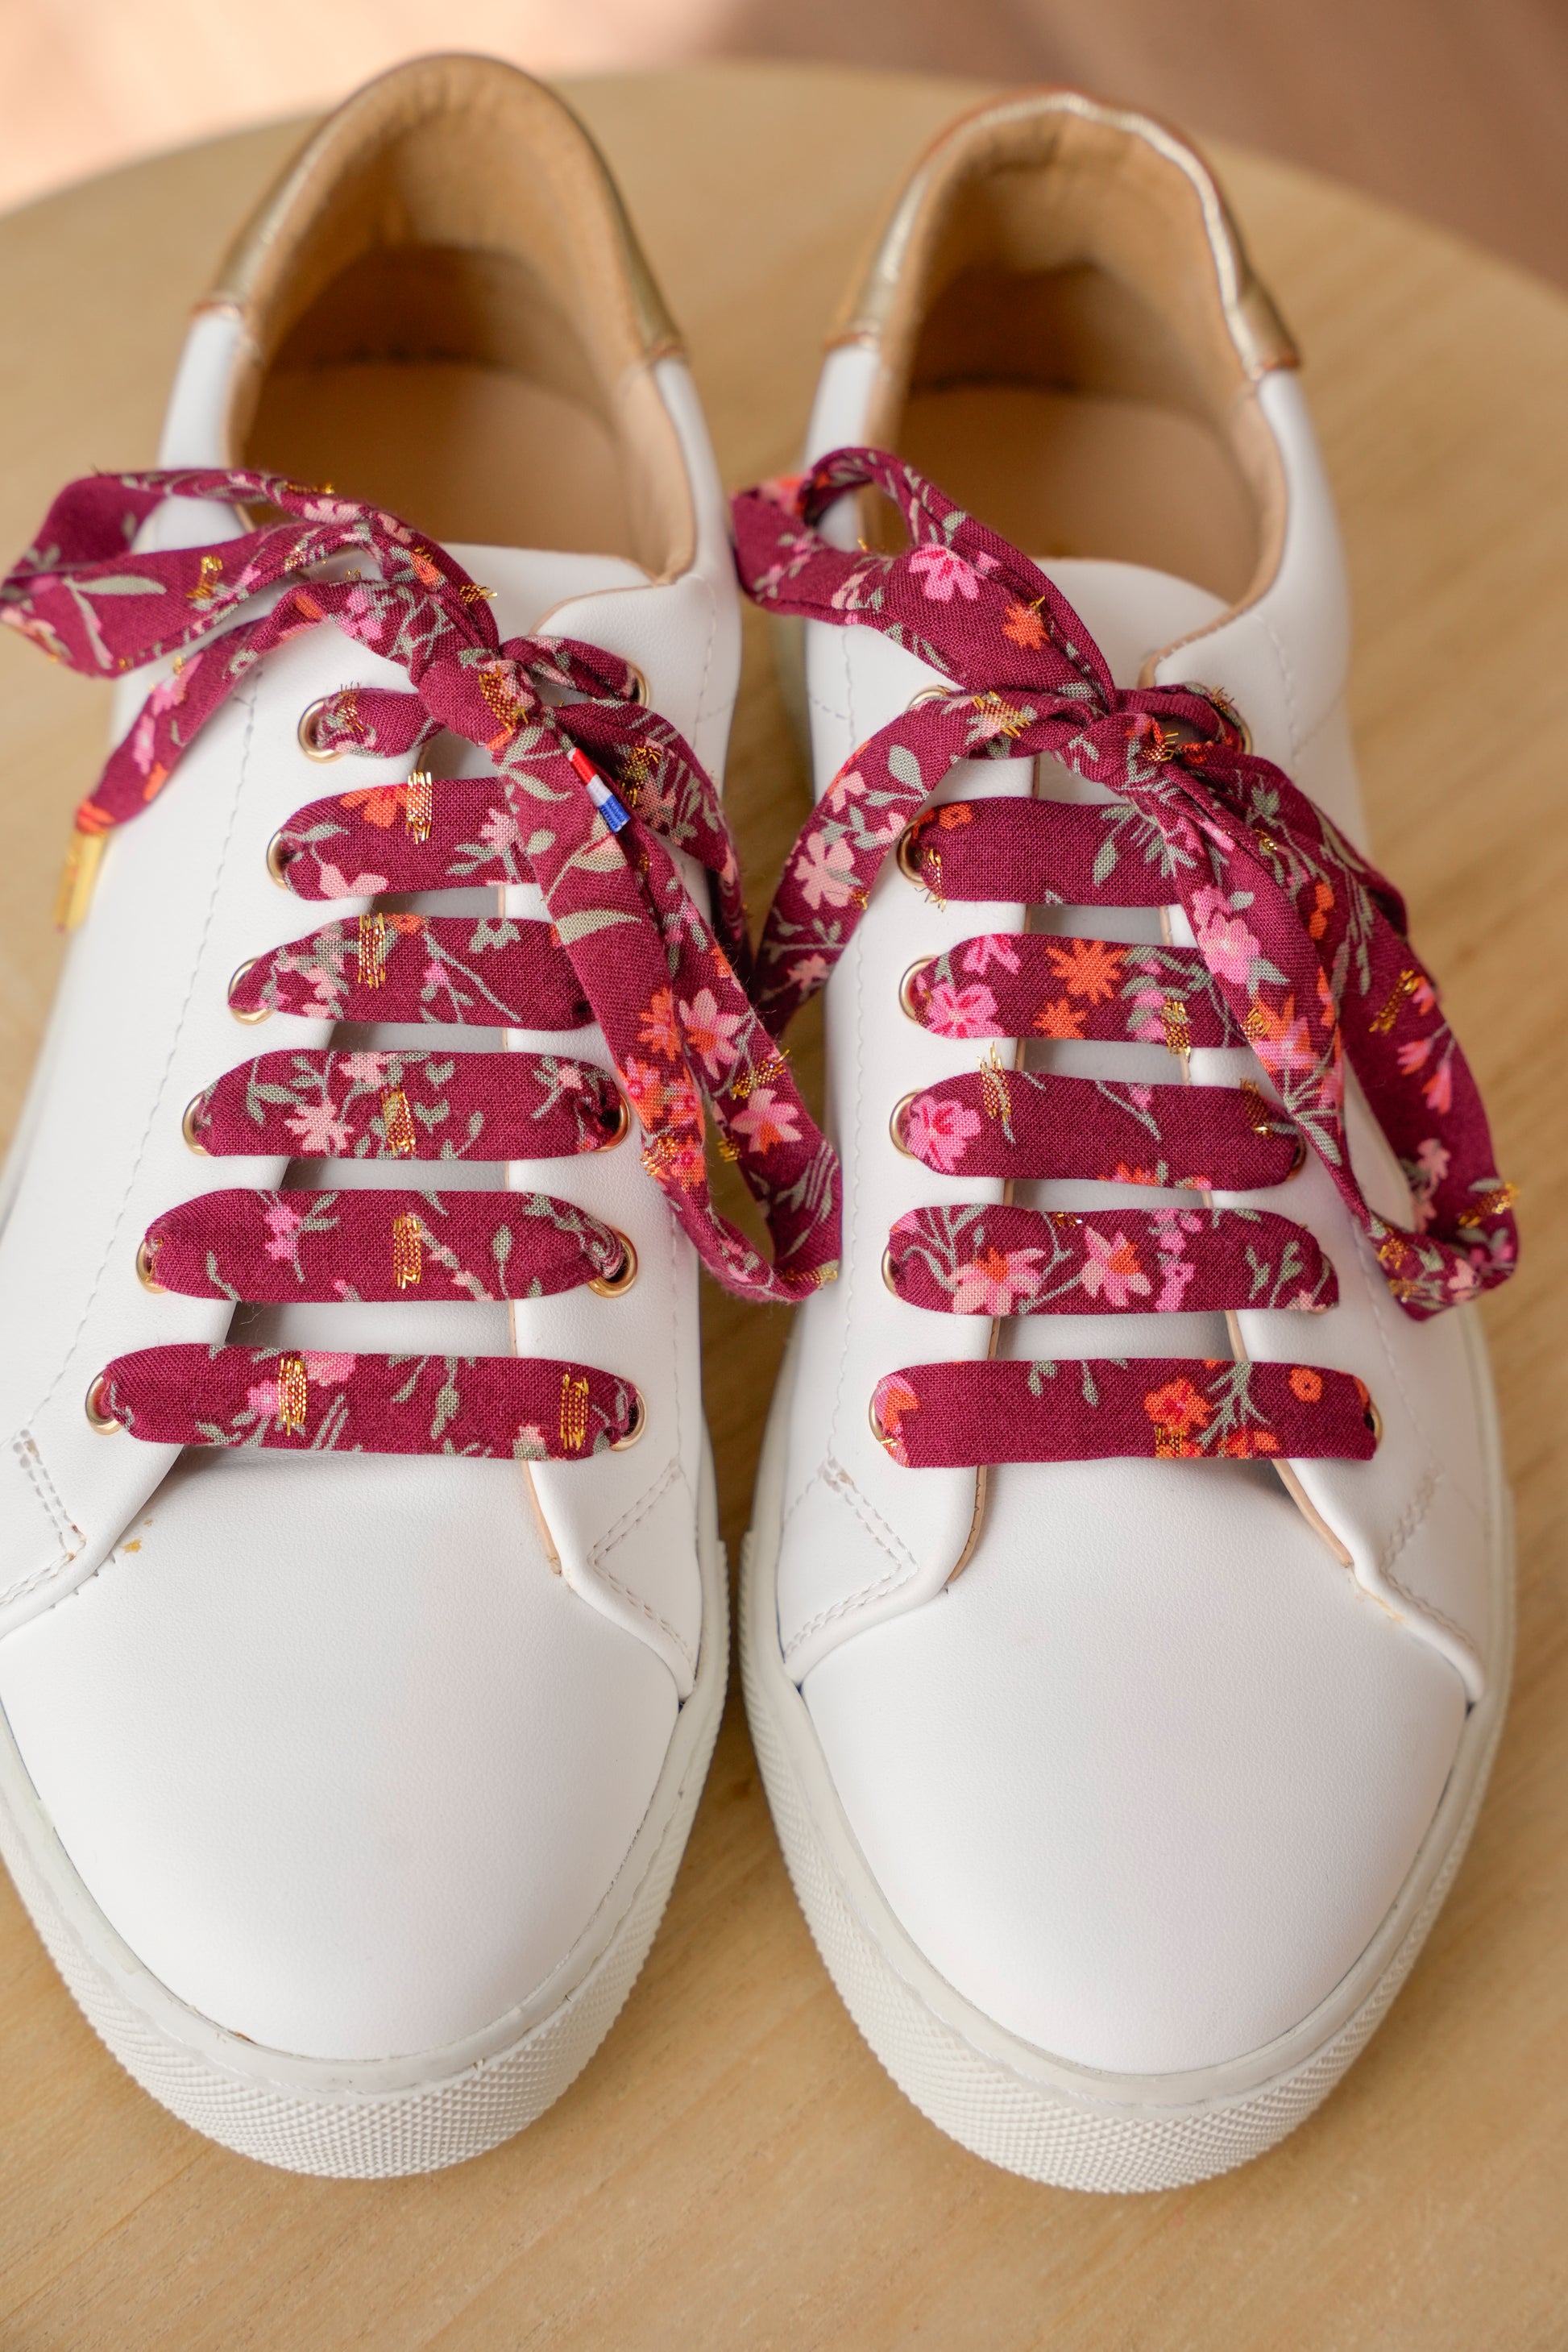 Lacets bordeaux fleuris plumetis dorés - Lacets originaux chaussures | Mon Lacet Français